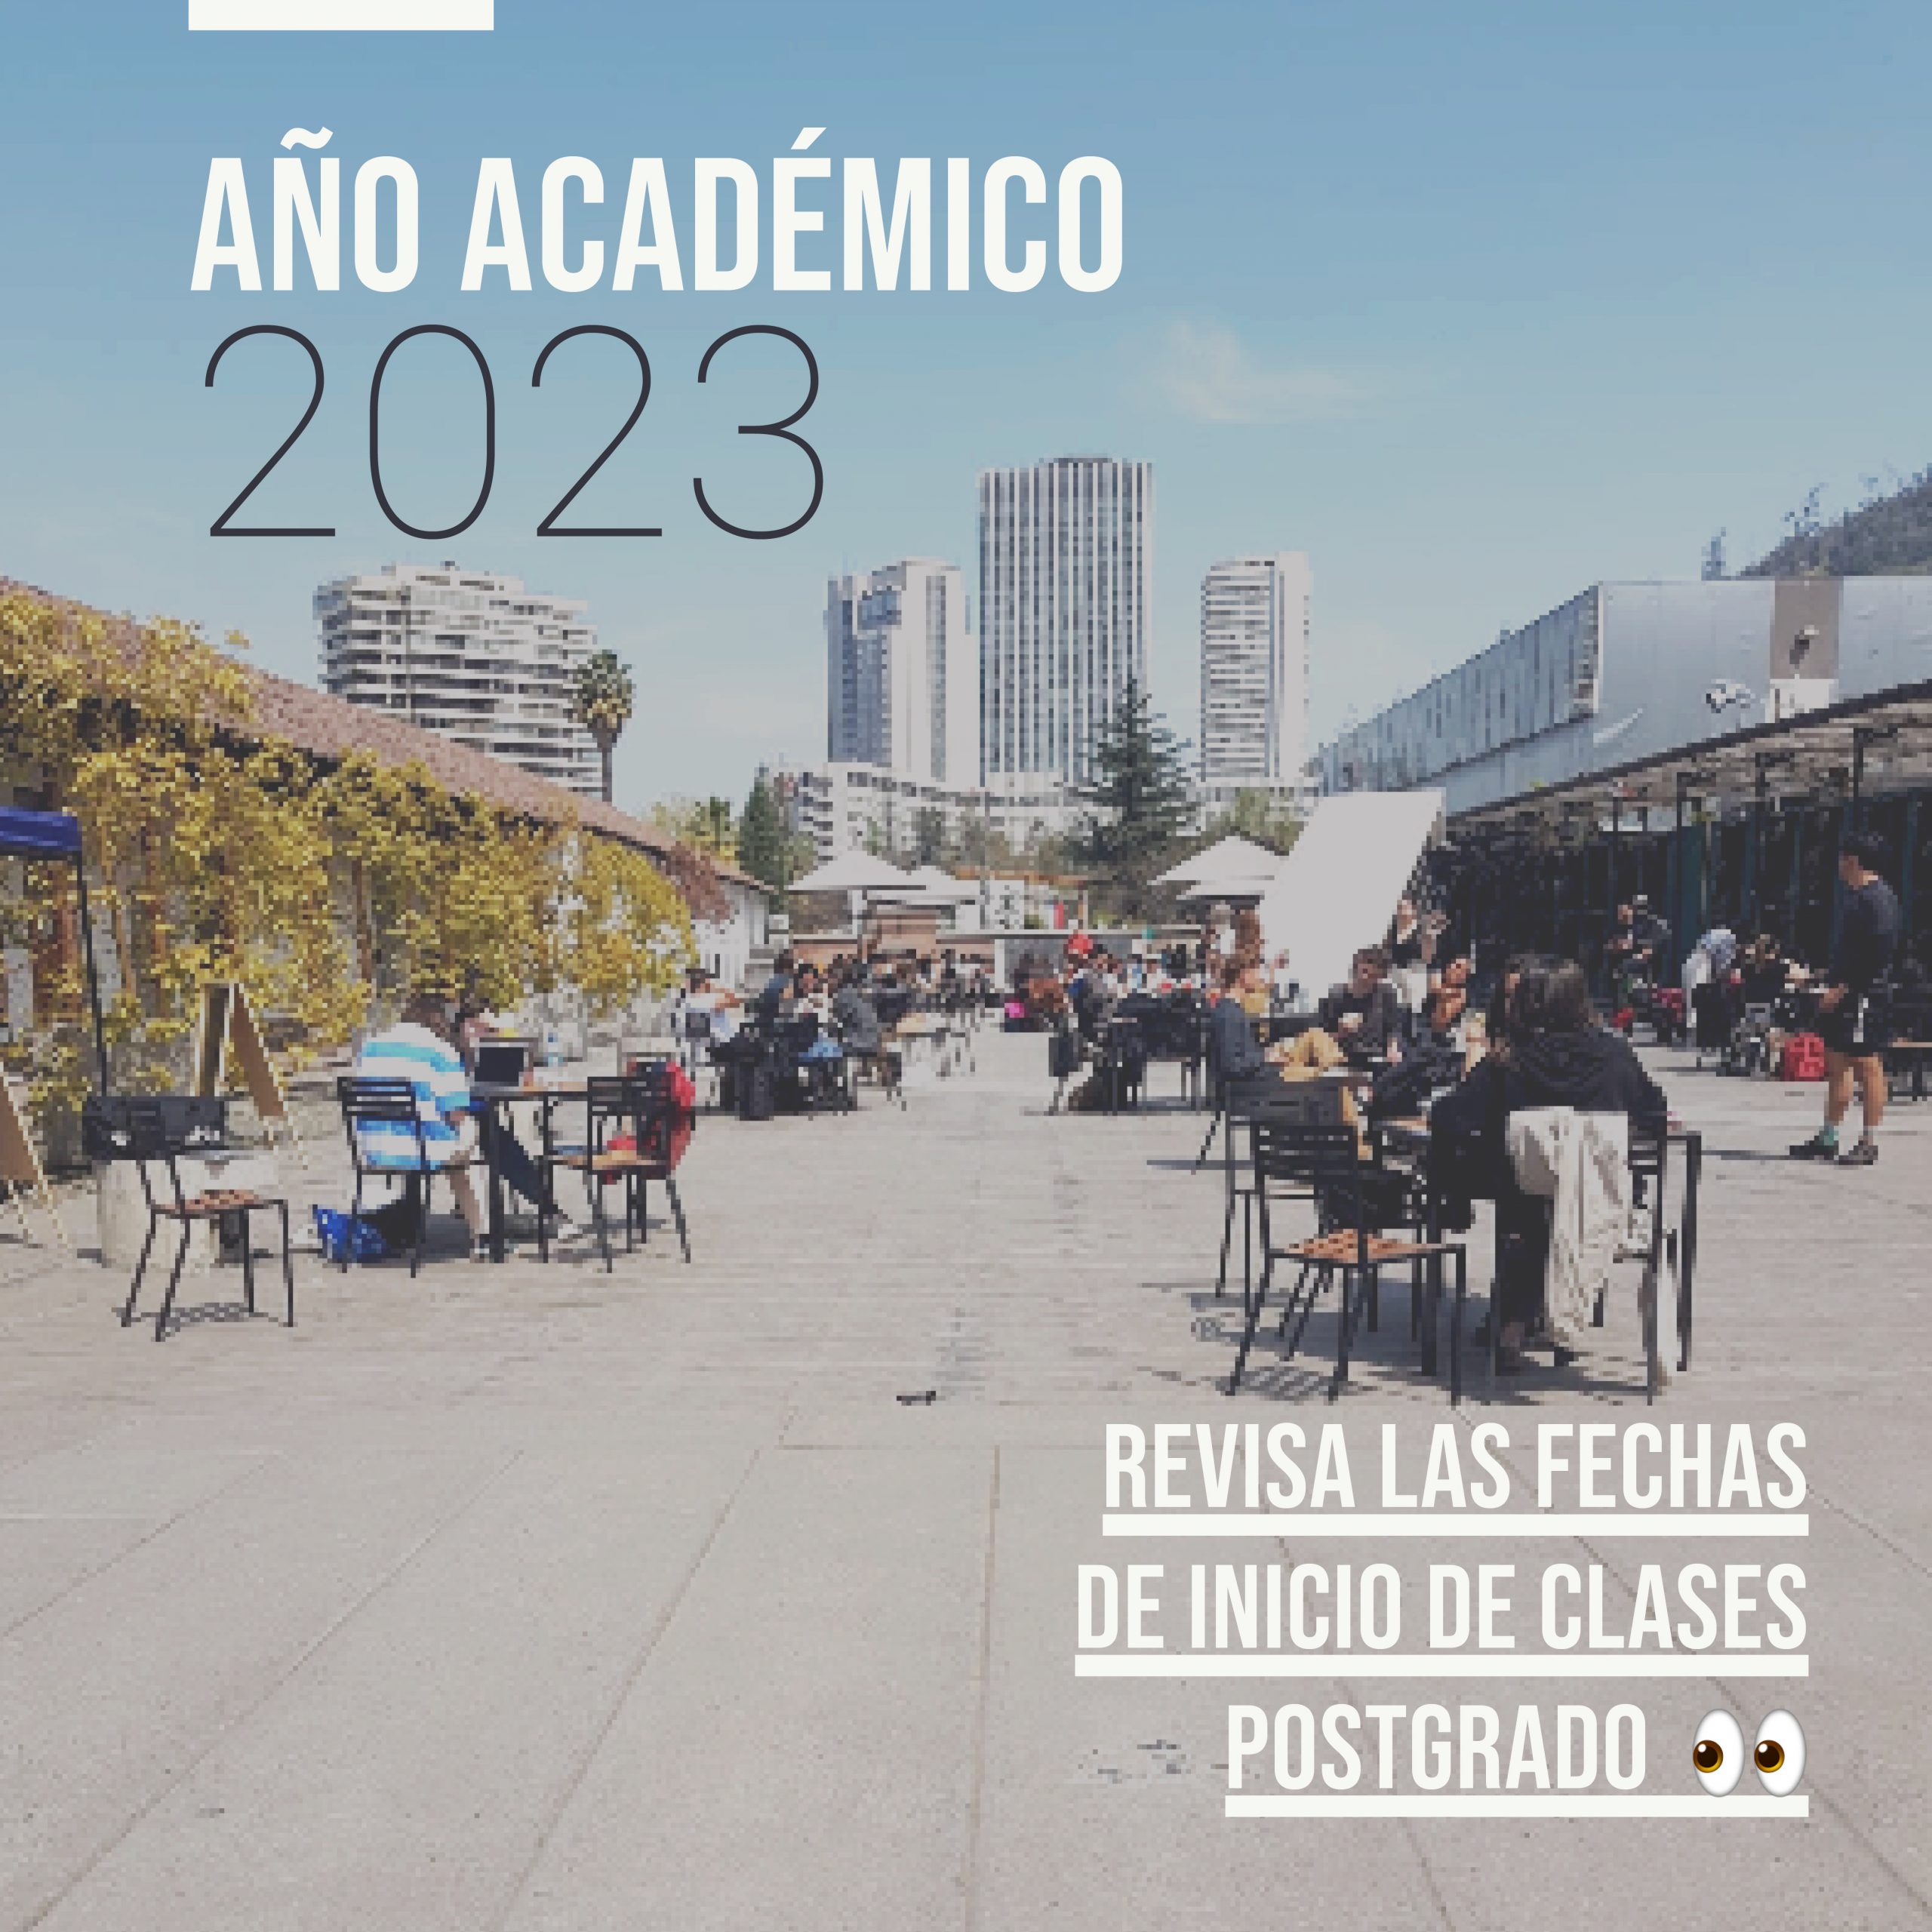 Año académico 2023: Revisa las fechas de inicio de clases